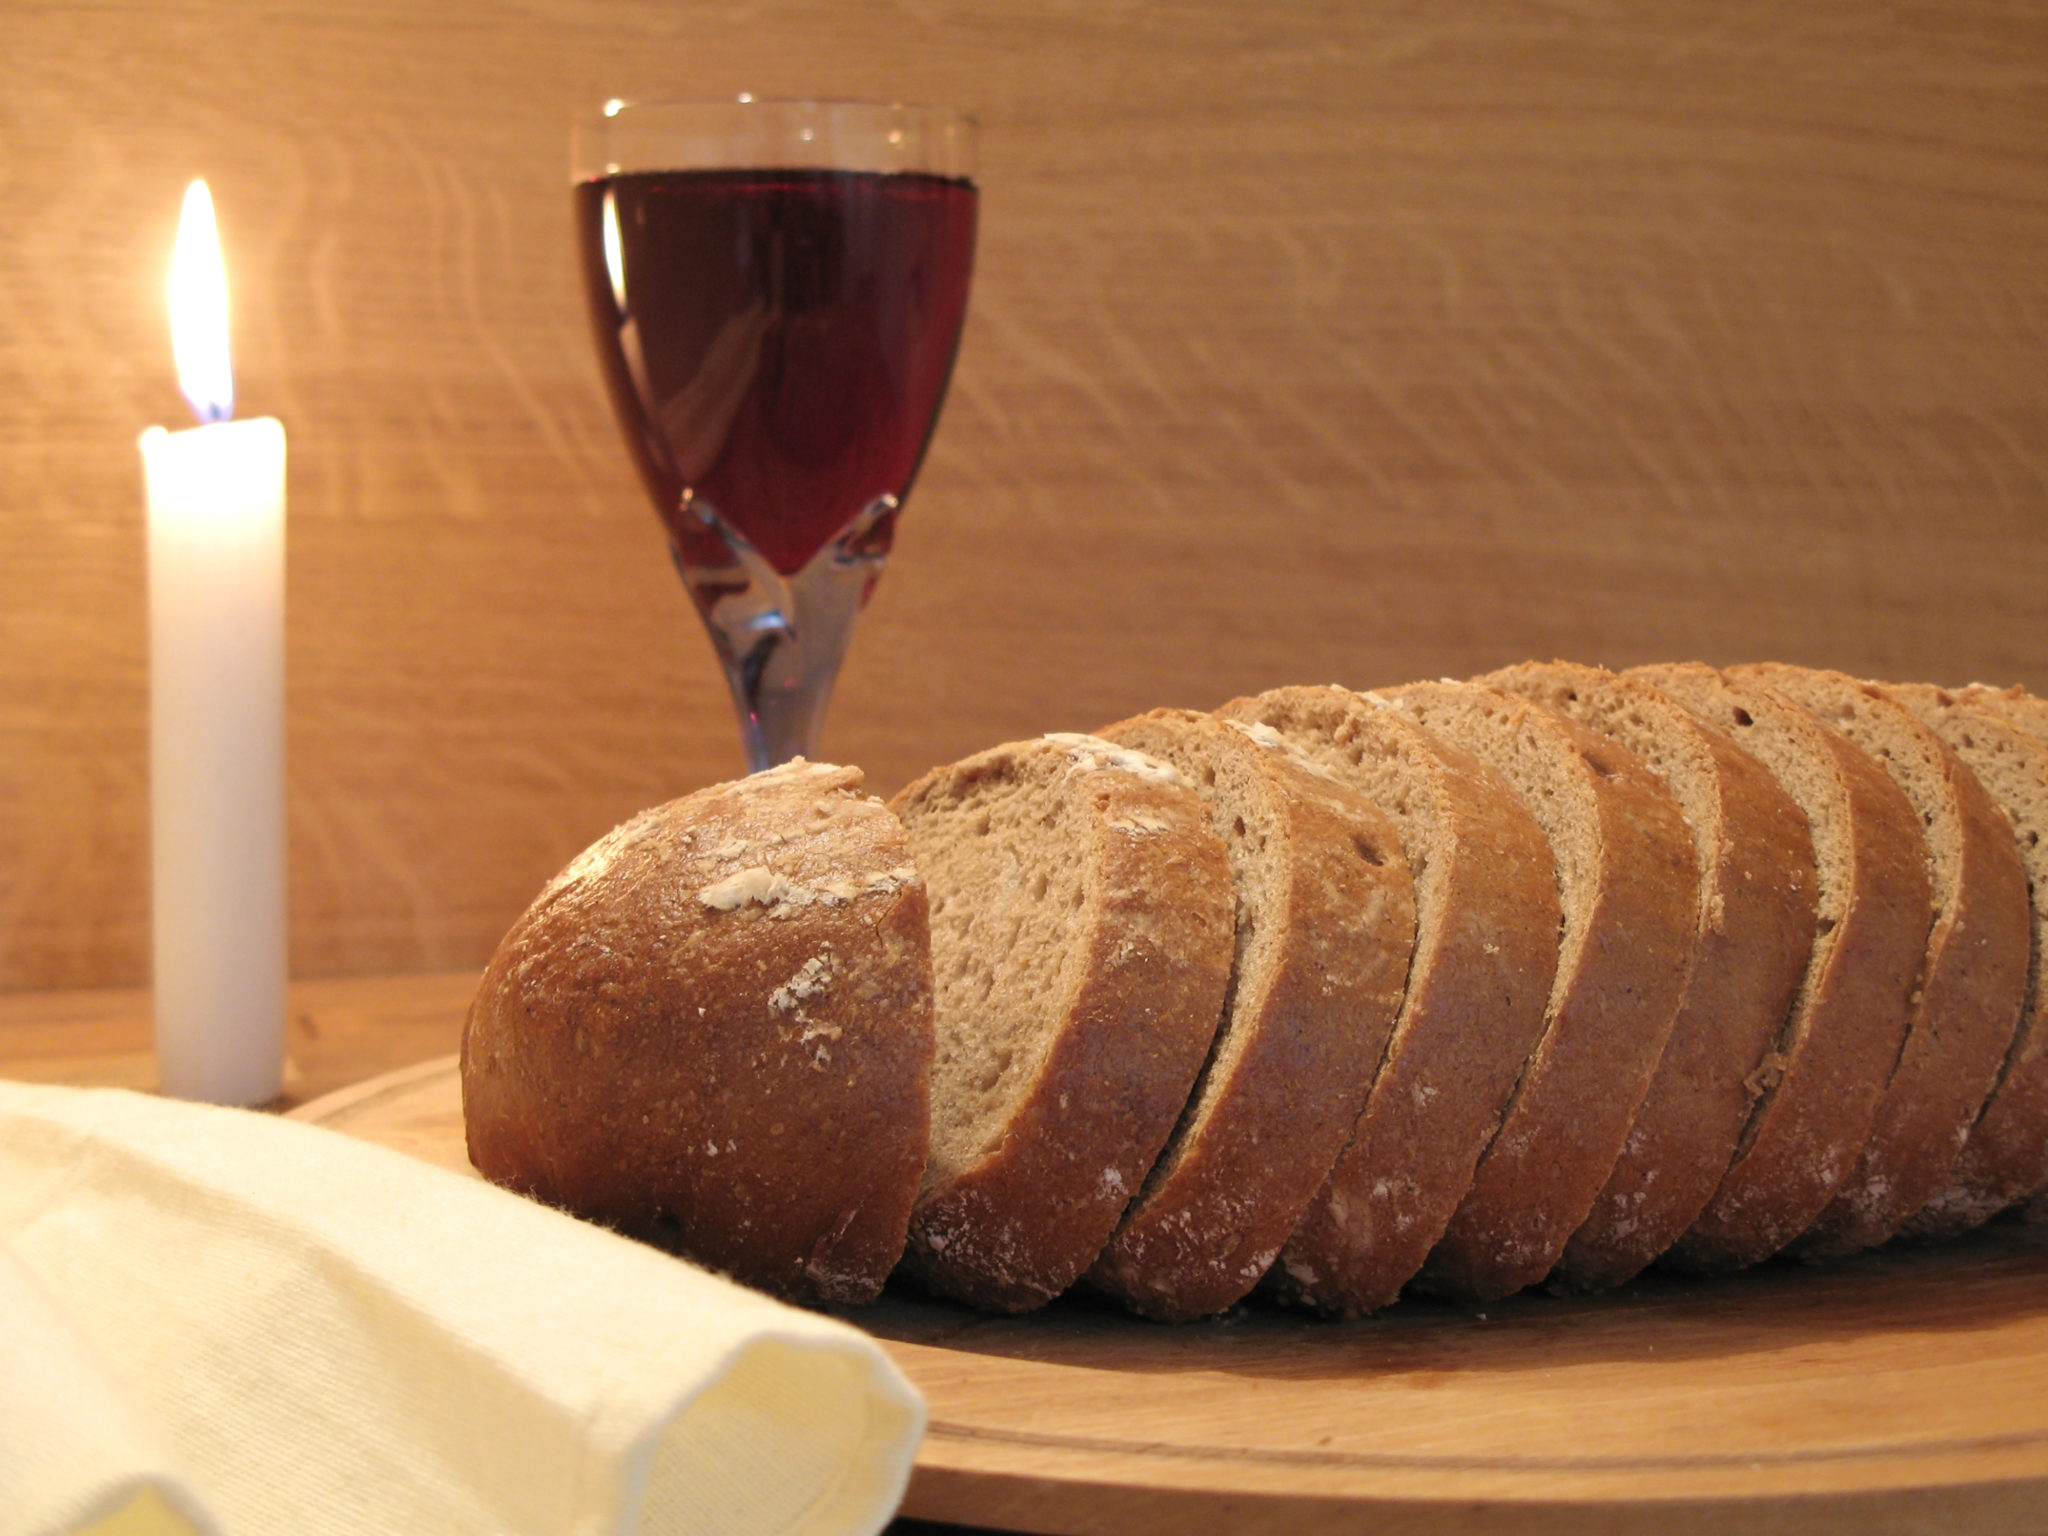 O corpo e o sangue de Cristo, representados por pão e vinho é exemplo conhecido do relacionamento estreito entre comida e religião